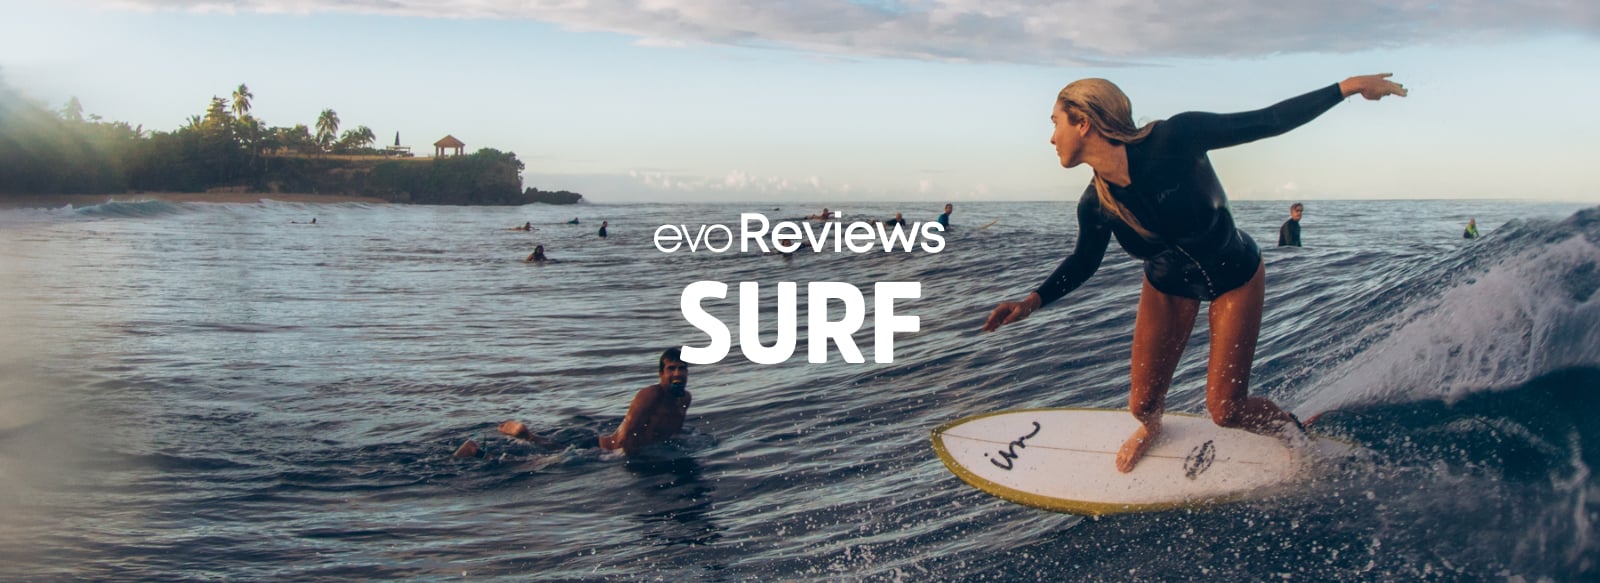 evoReviews Surf